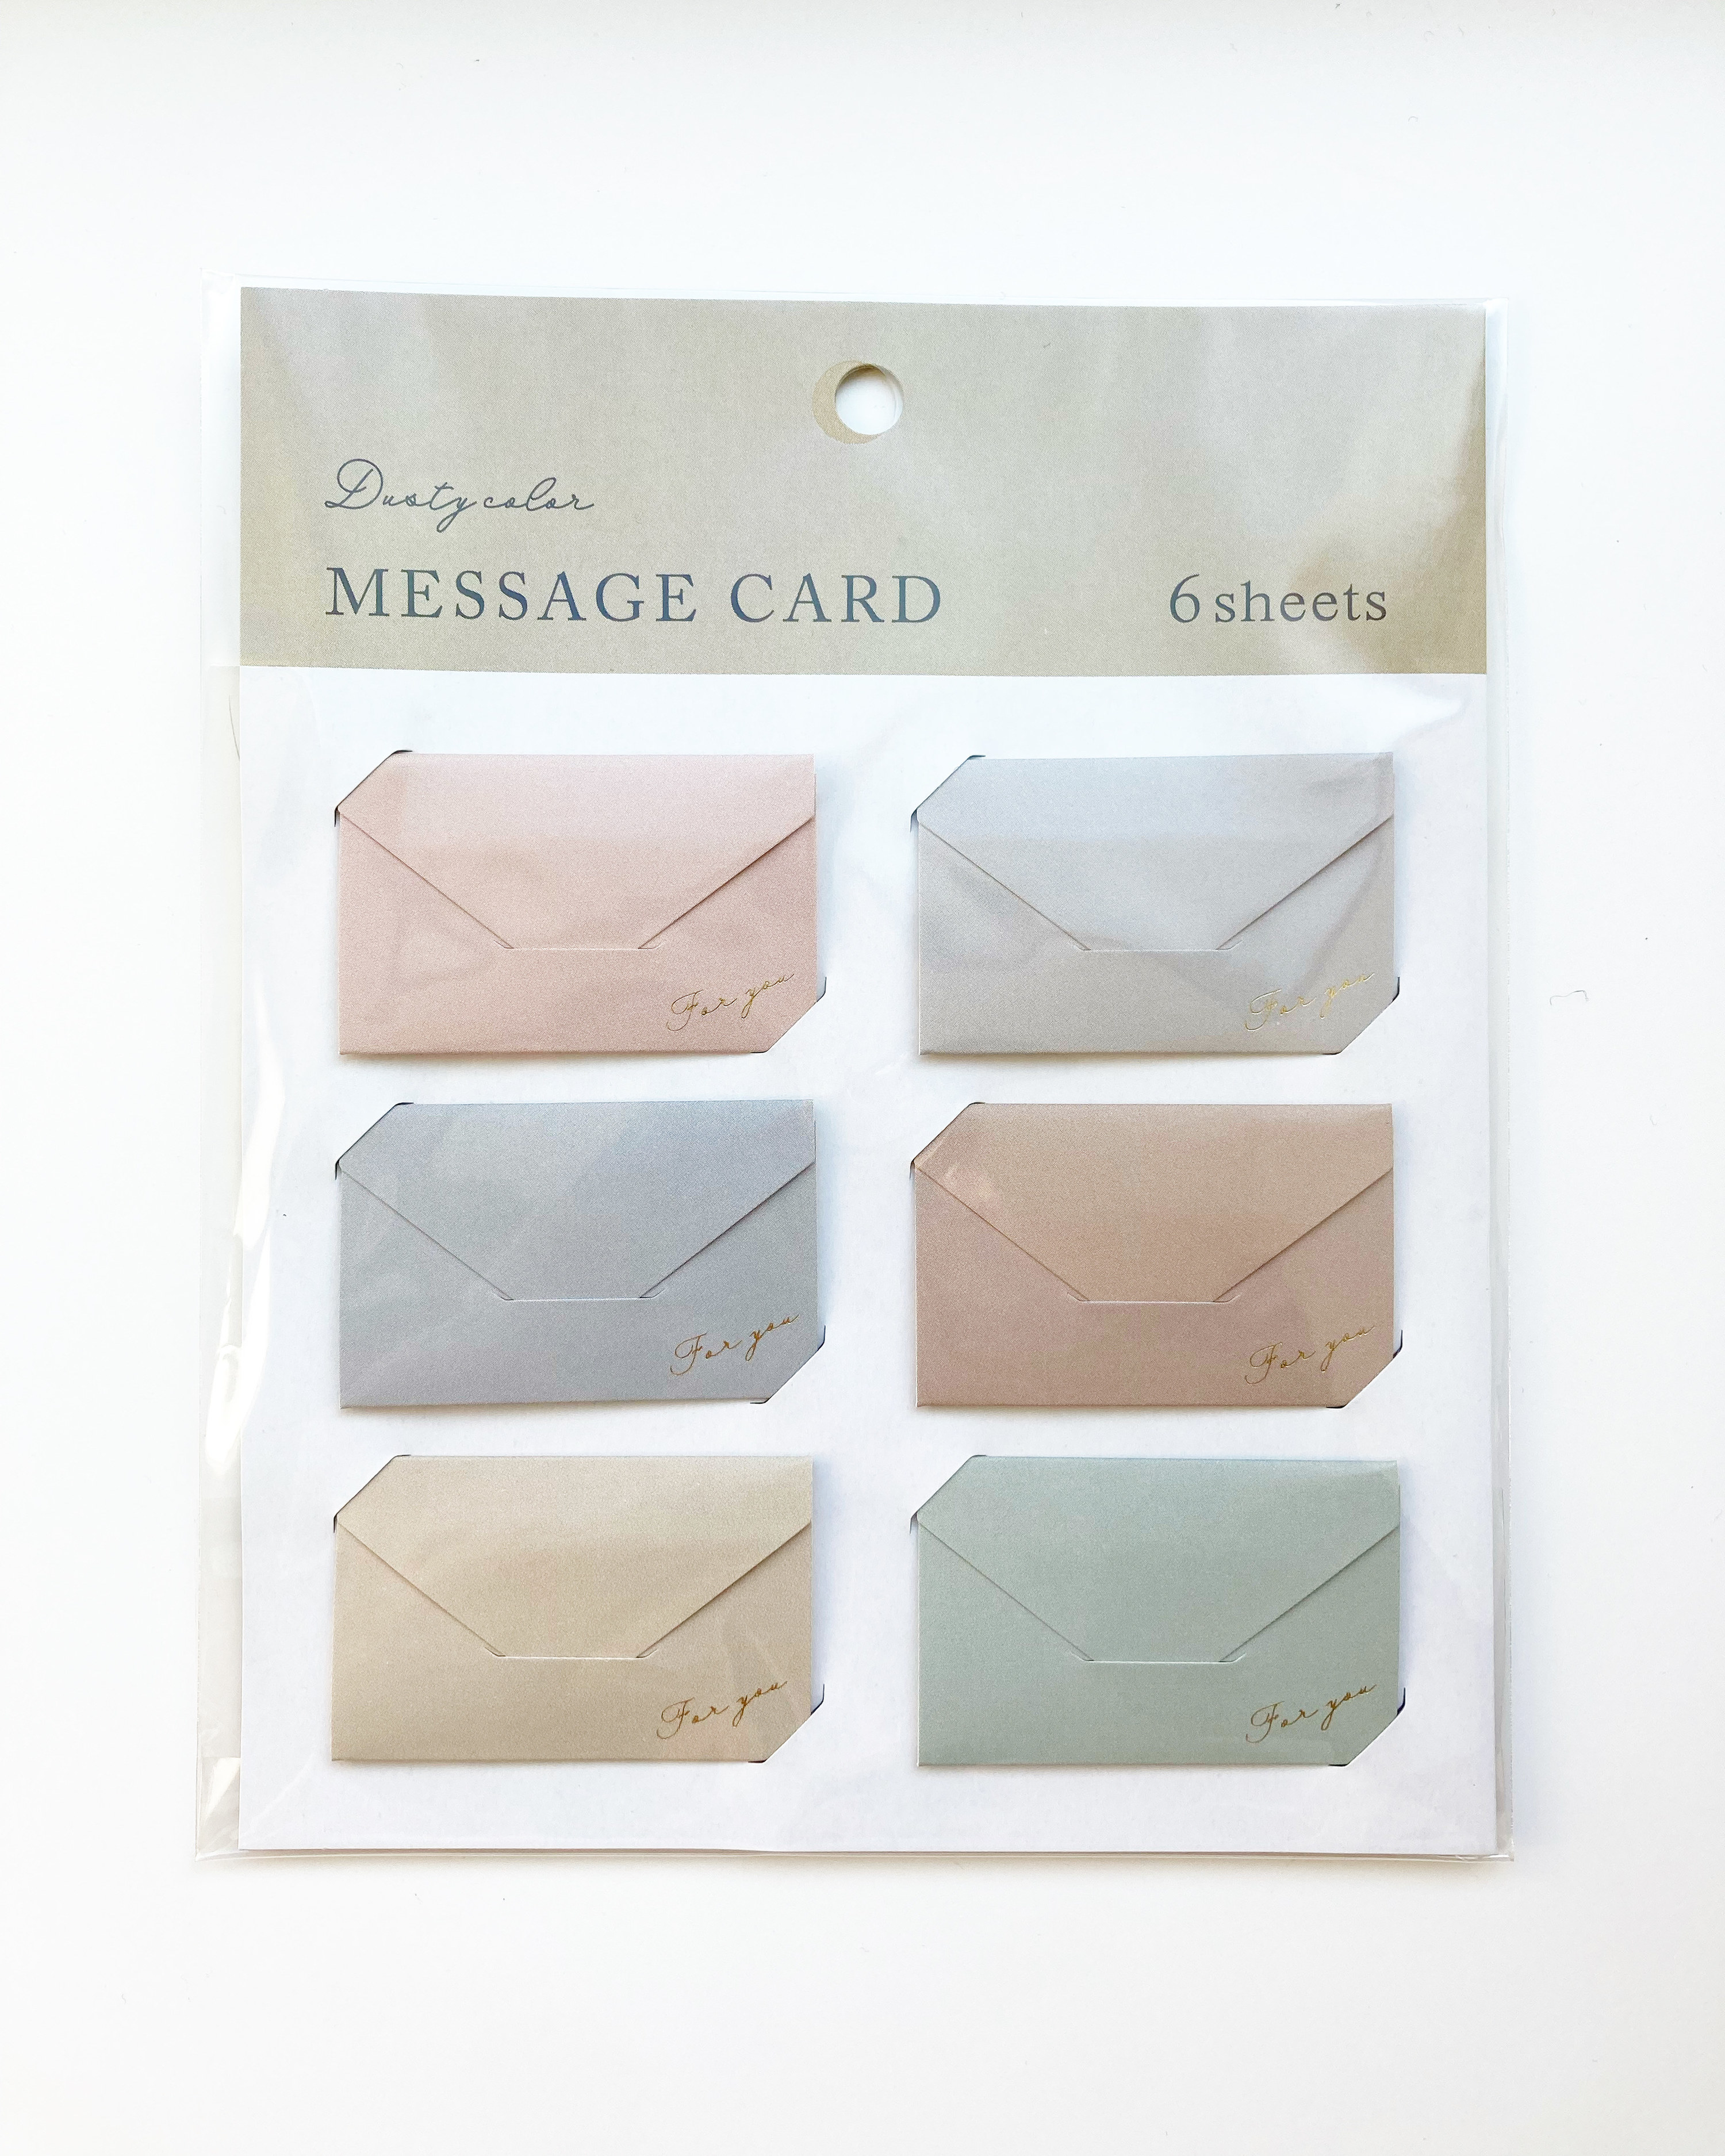 CanDo（キャンドゥ）のおすすめカード「封筒型メッセージカードダスティカラー」